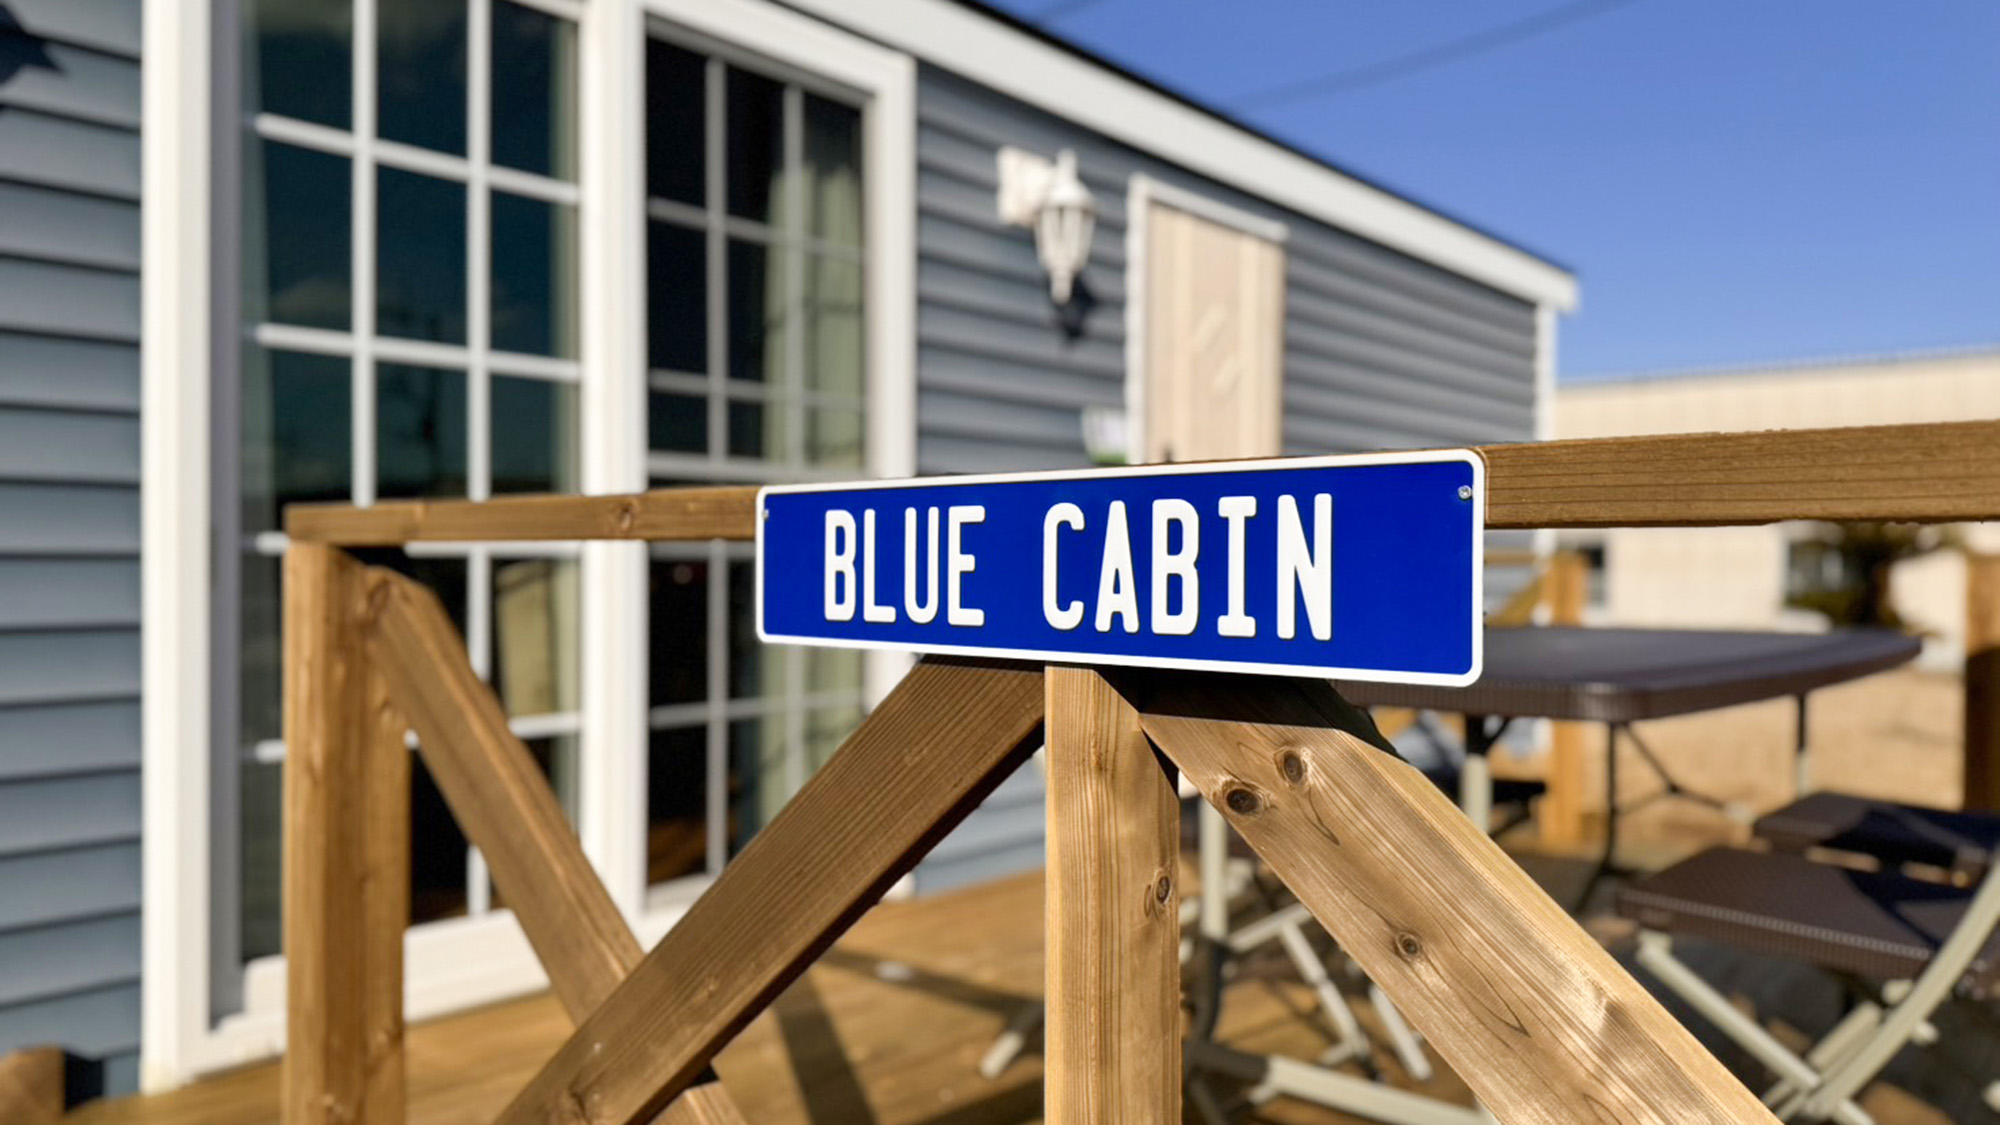 ・【BLUE Cabin】青いルームサインを目印にお越しください